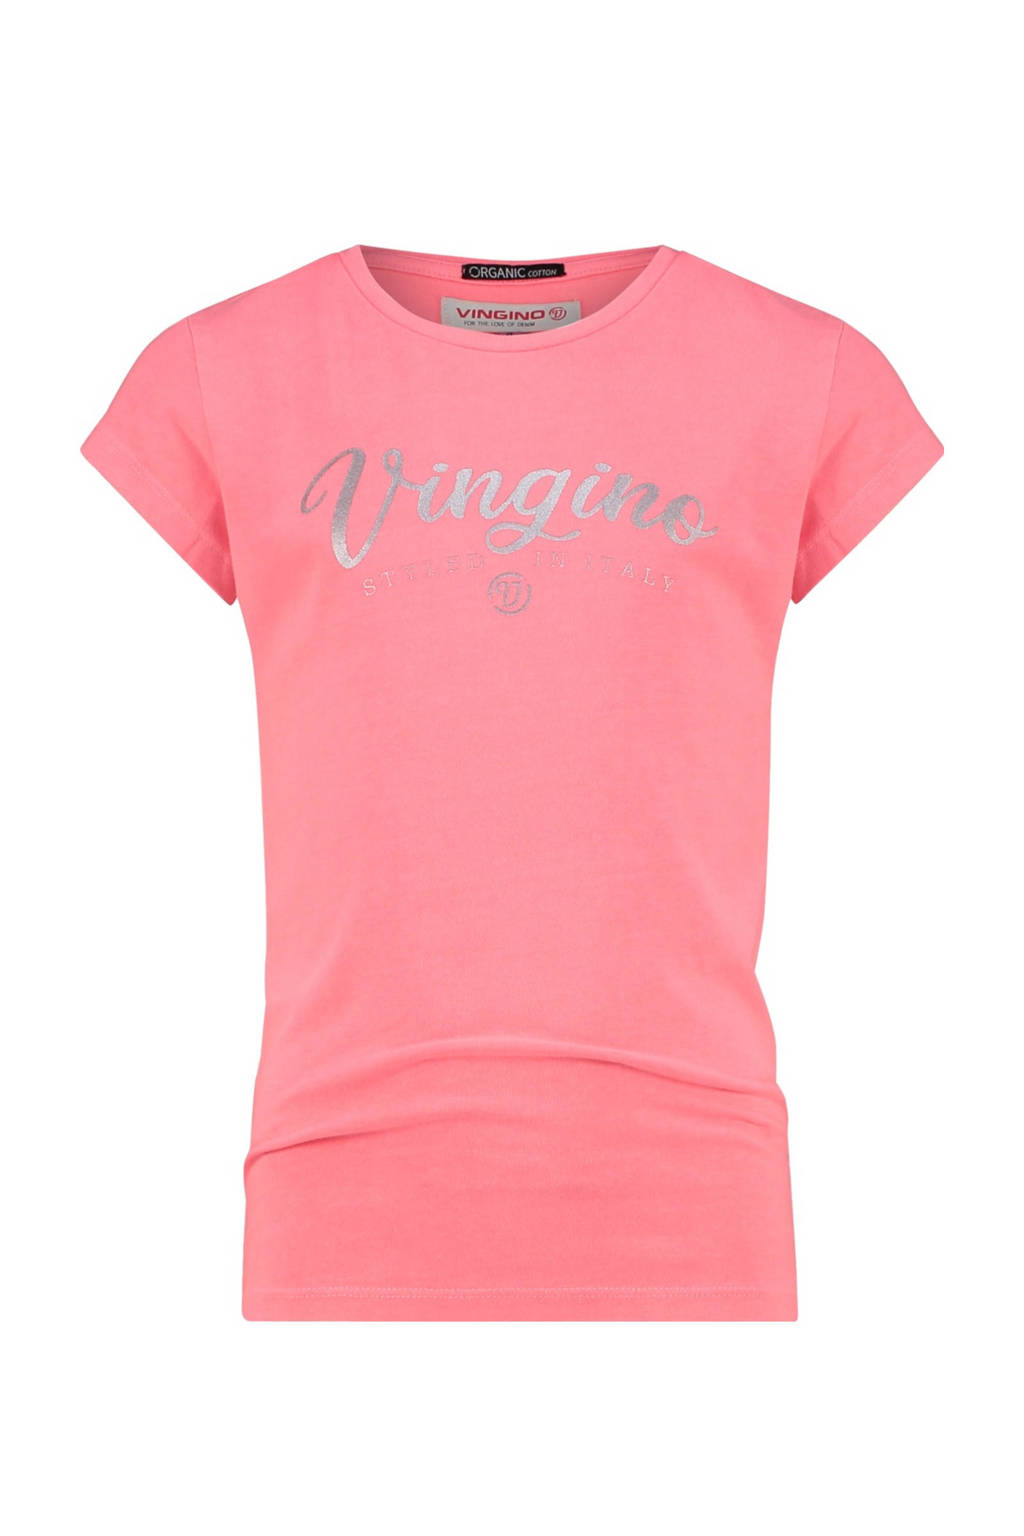 Rode meisjes Vingino Essentials T-shirt van duurzaam stretchkatoen met logo dessin, korte mouwen en ronde hals